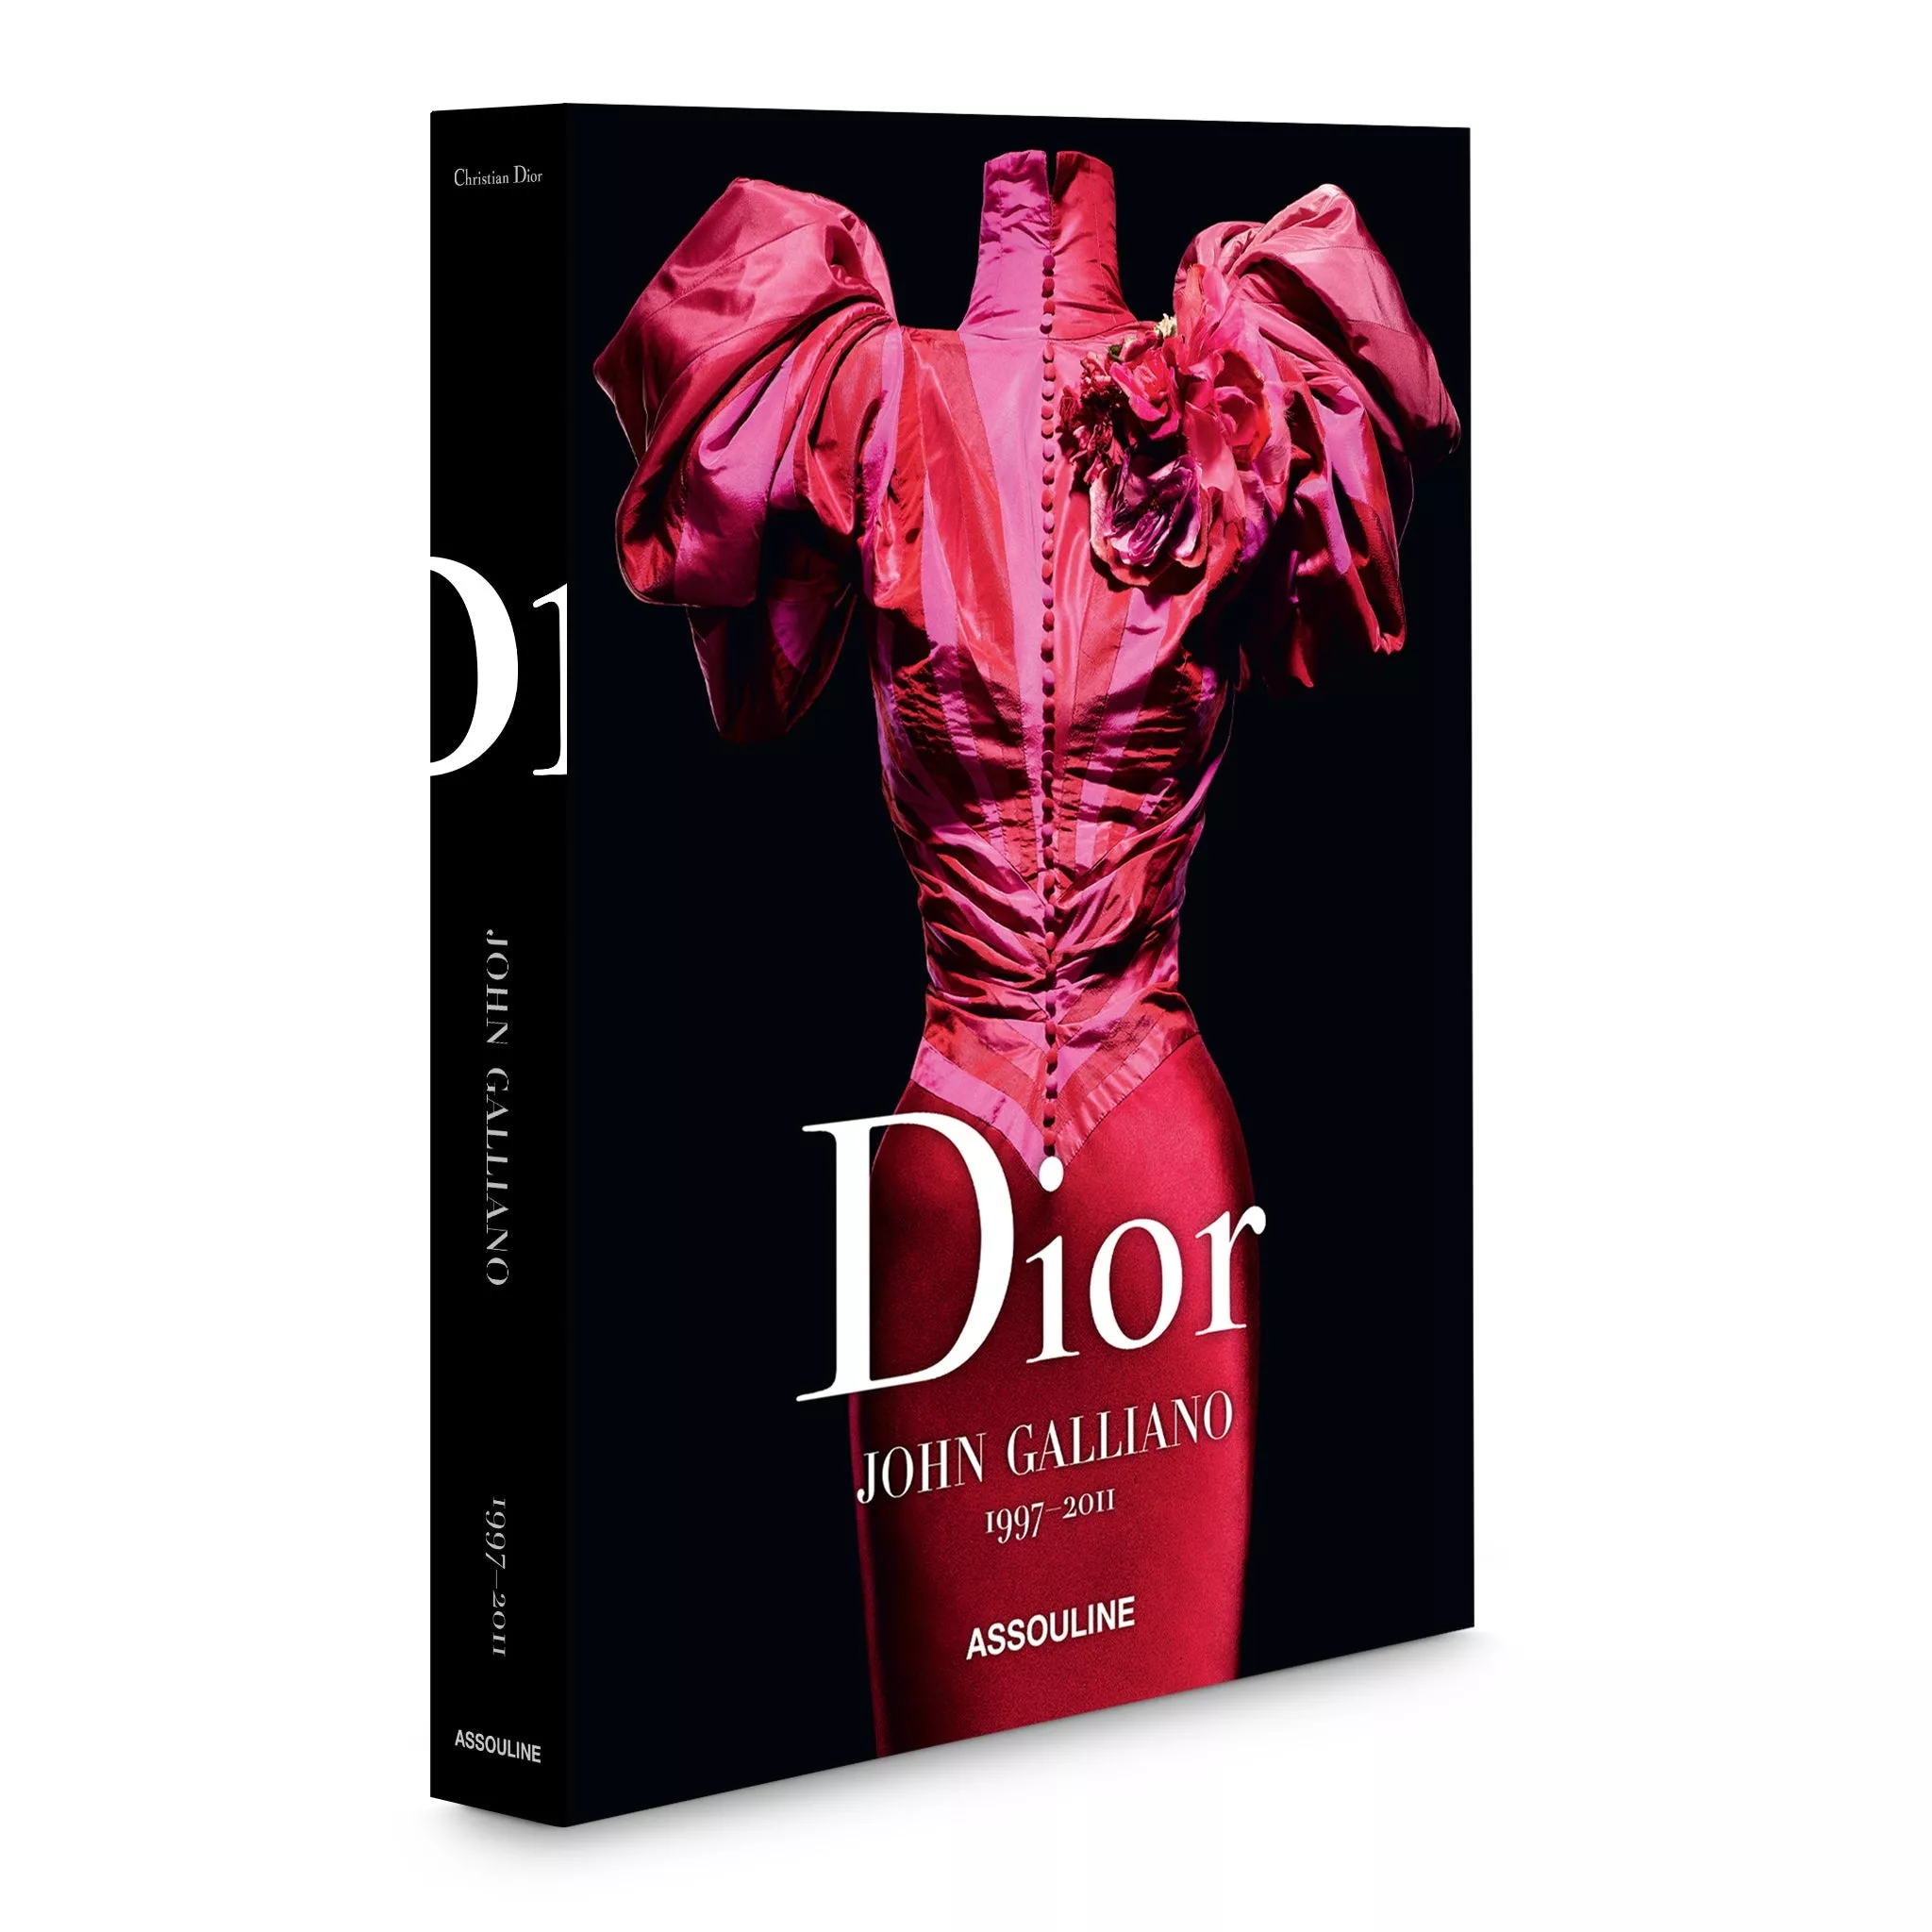 Dior випустить книгу, присвячену дизайнам креативного директора Джона Гальяно